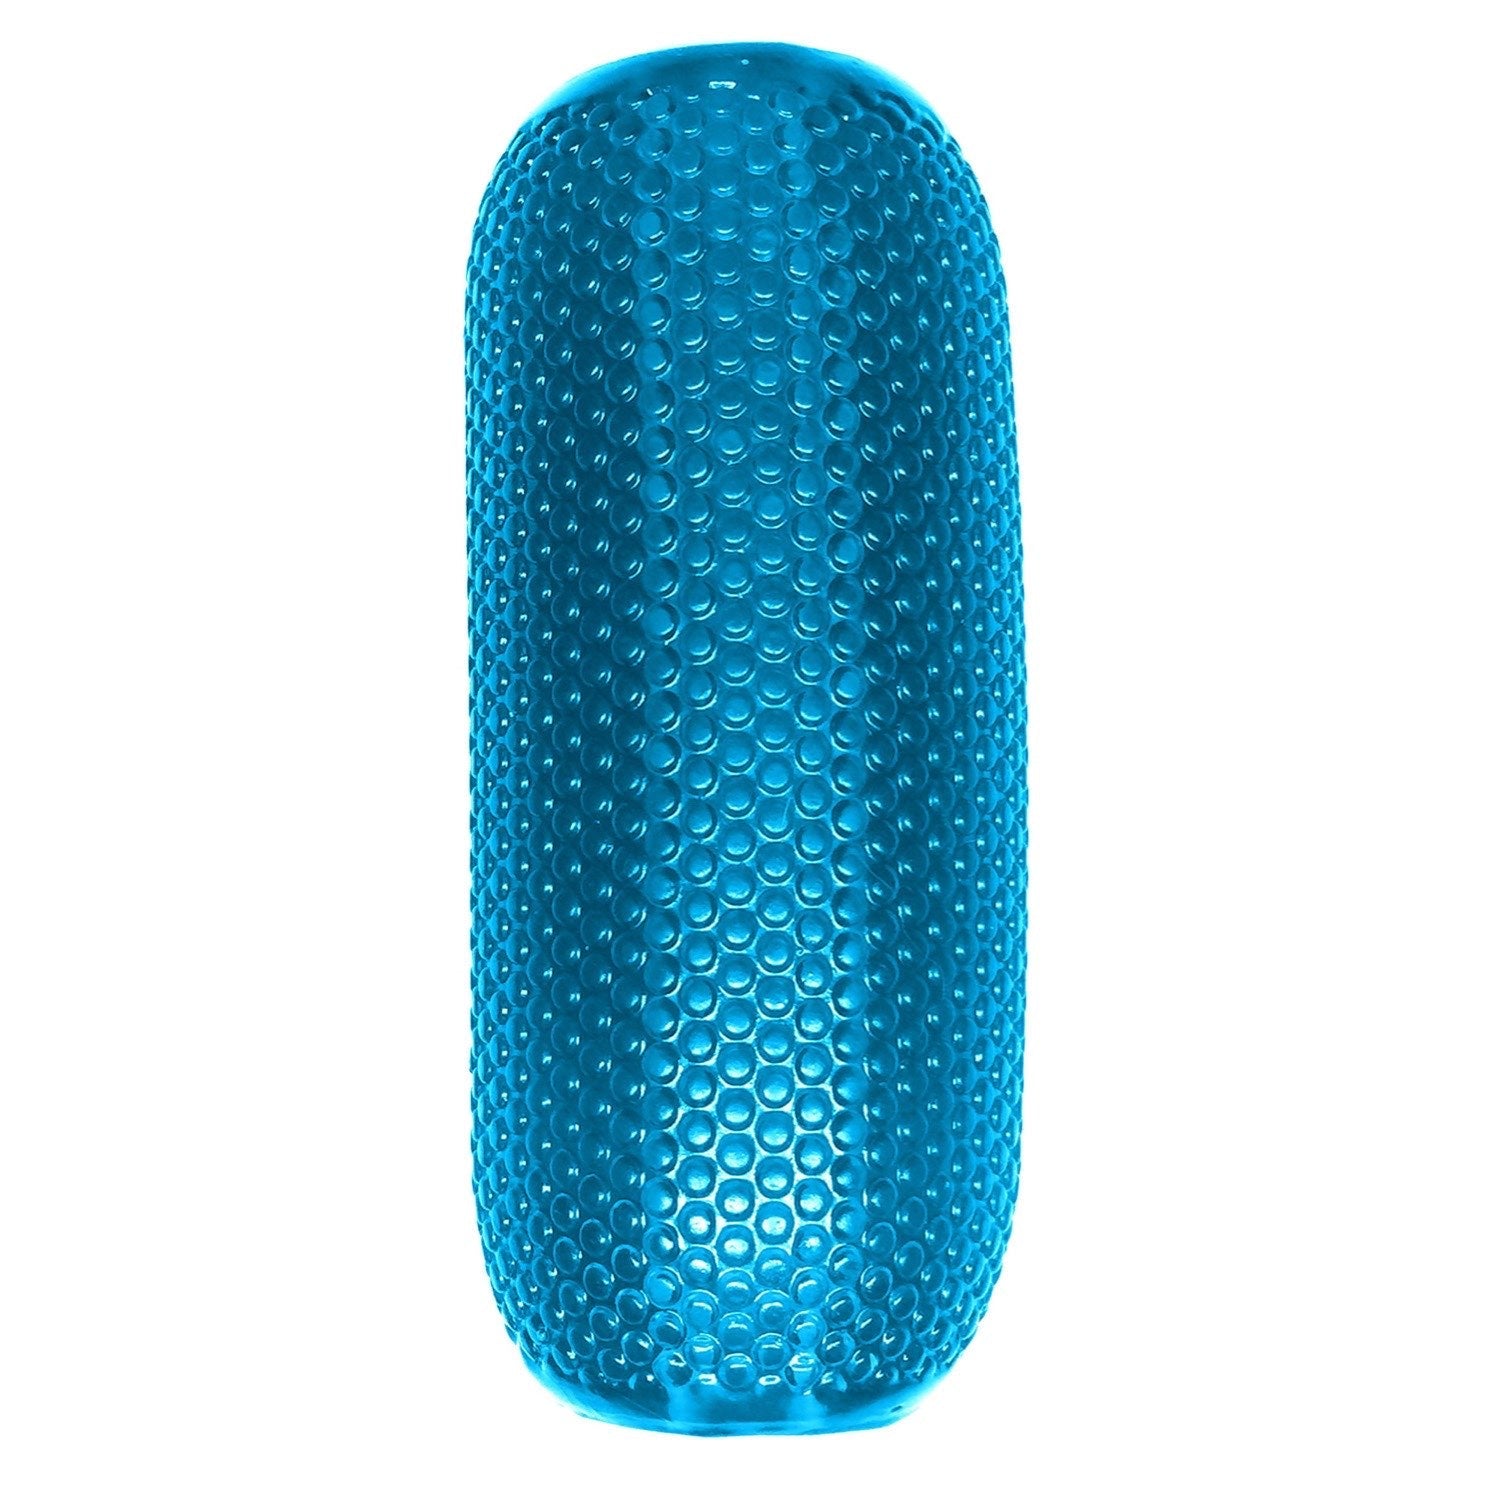  Neon EZ Grip Stroker - Blue Masturbator Sleeve by Pipedream